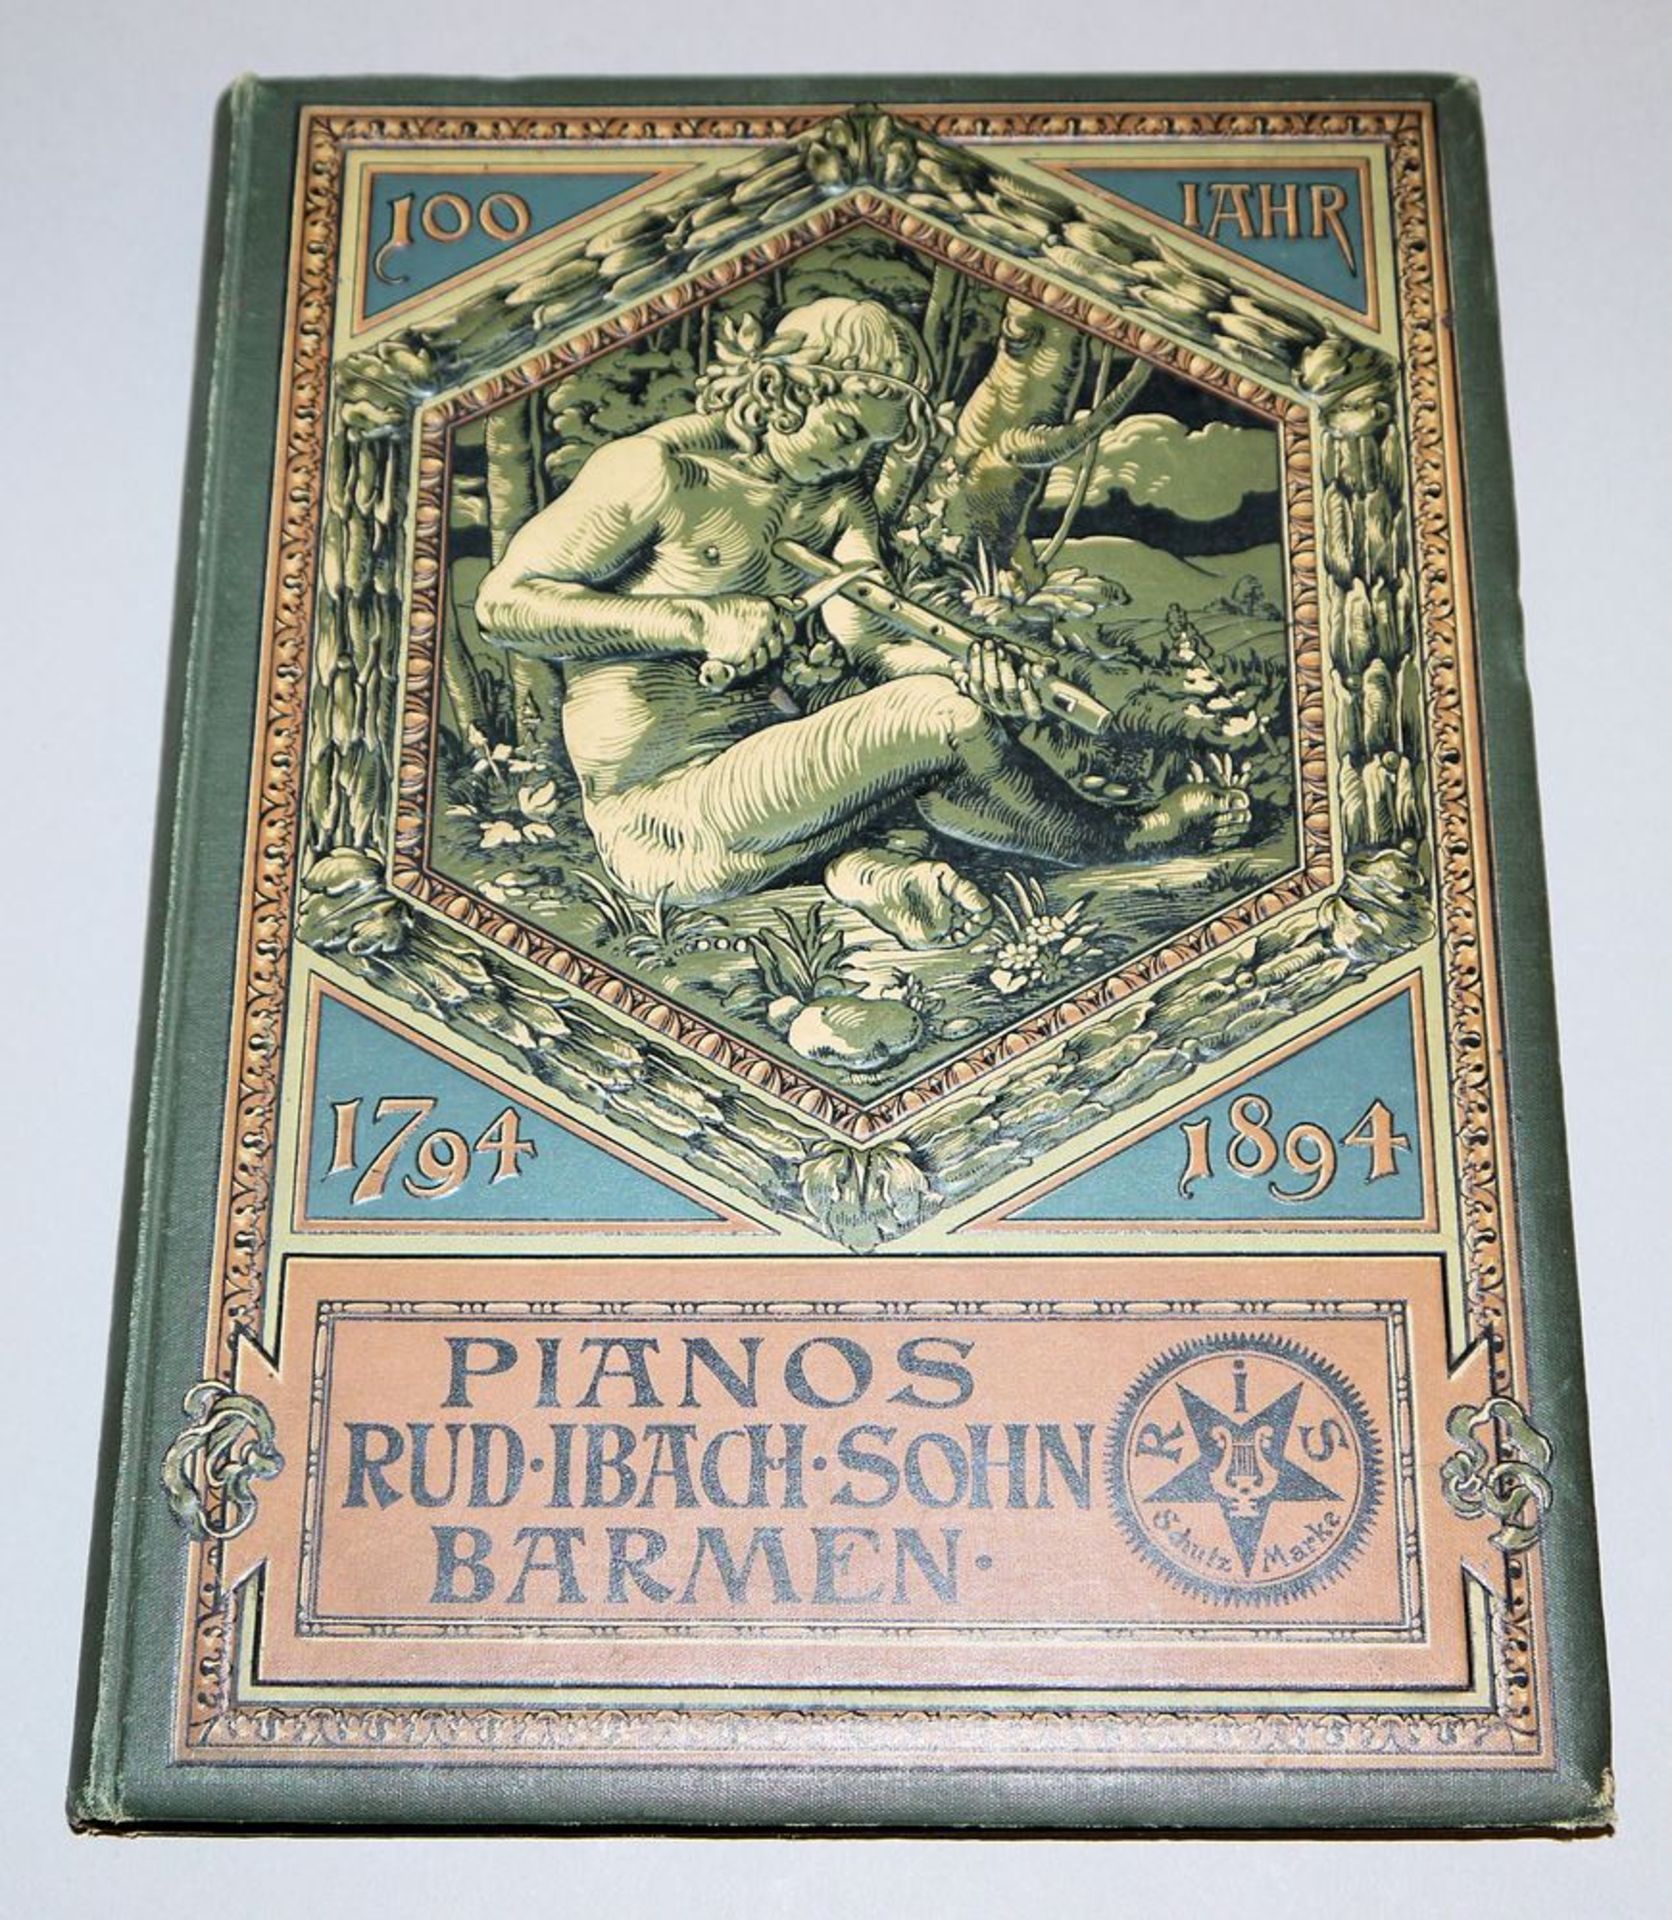 Buchrarität: Seltene Jubiläumsausgabe des Piano-Herstellers Rudolph Ibach, Barmen 1894